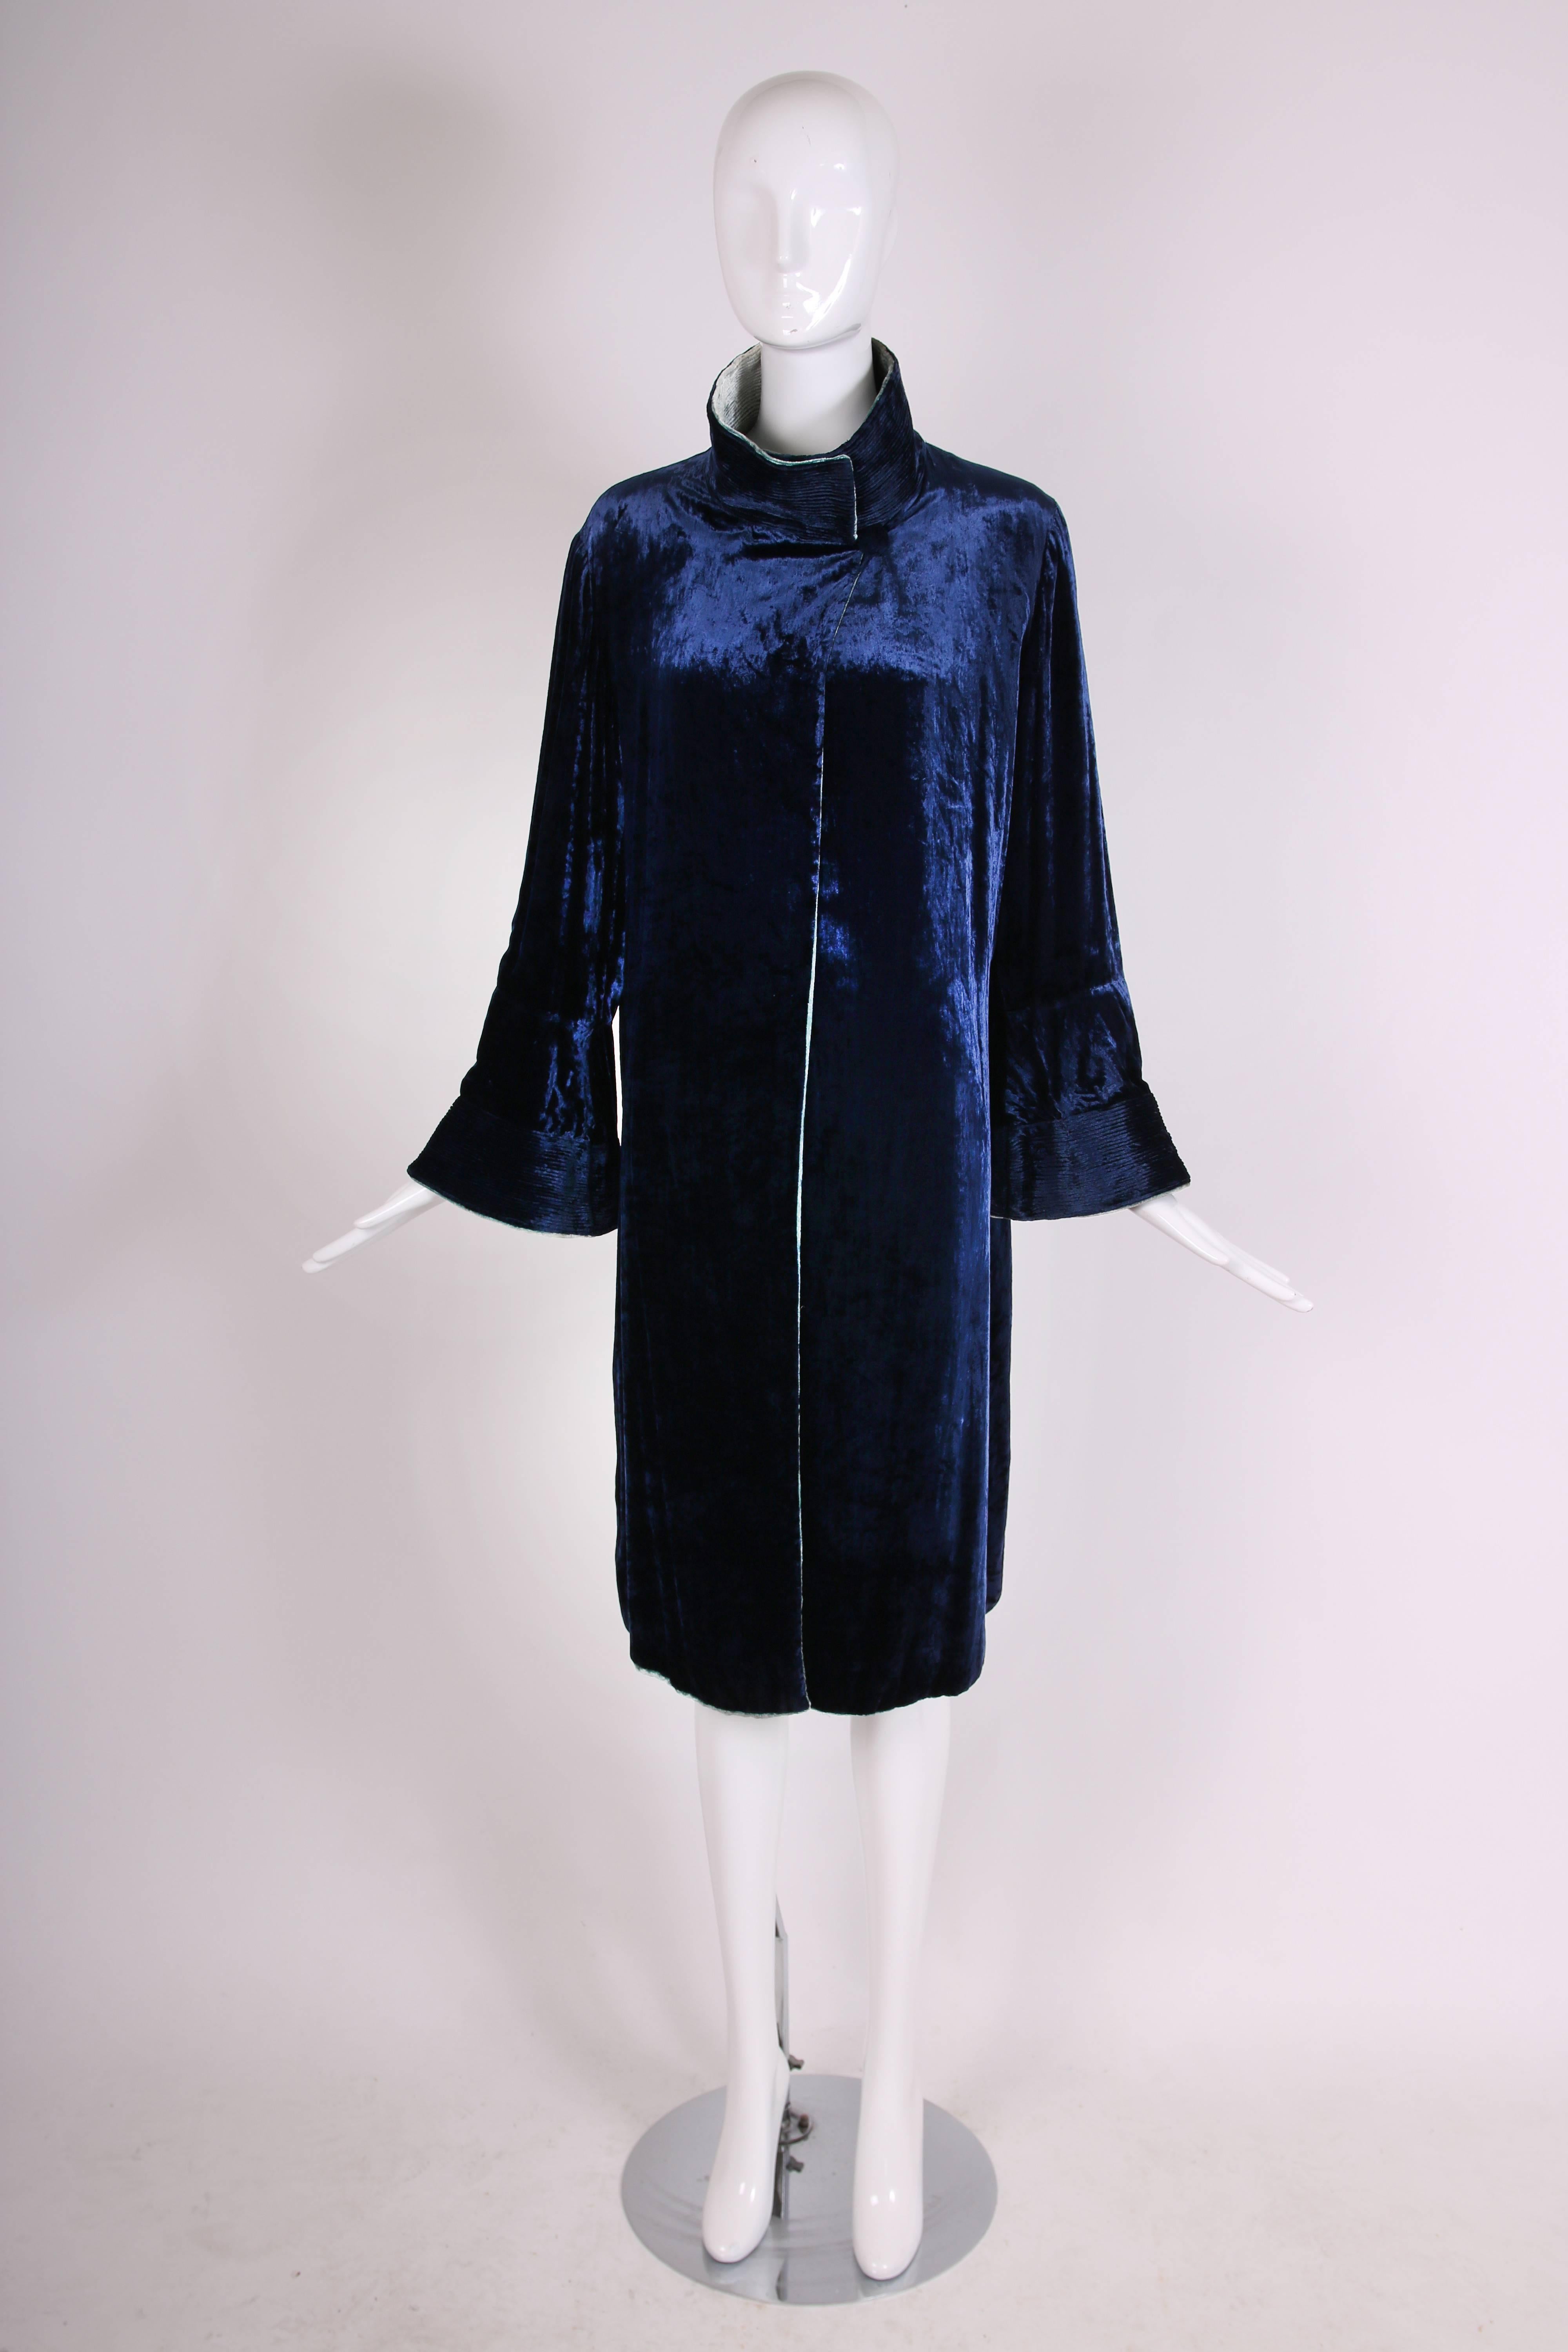 Women's Attributed to Jeanne Lanvin Reversible Velvet Coat Ca. 1925